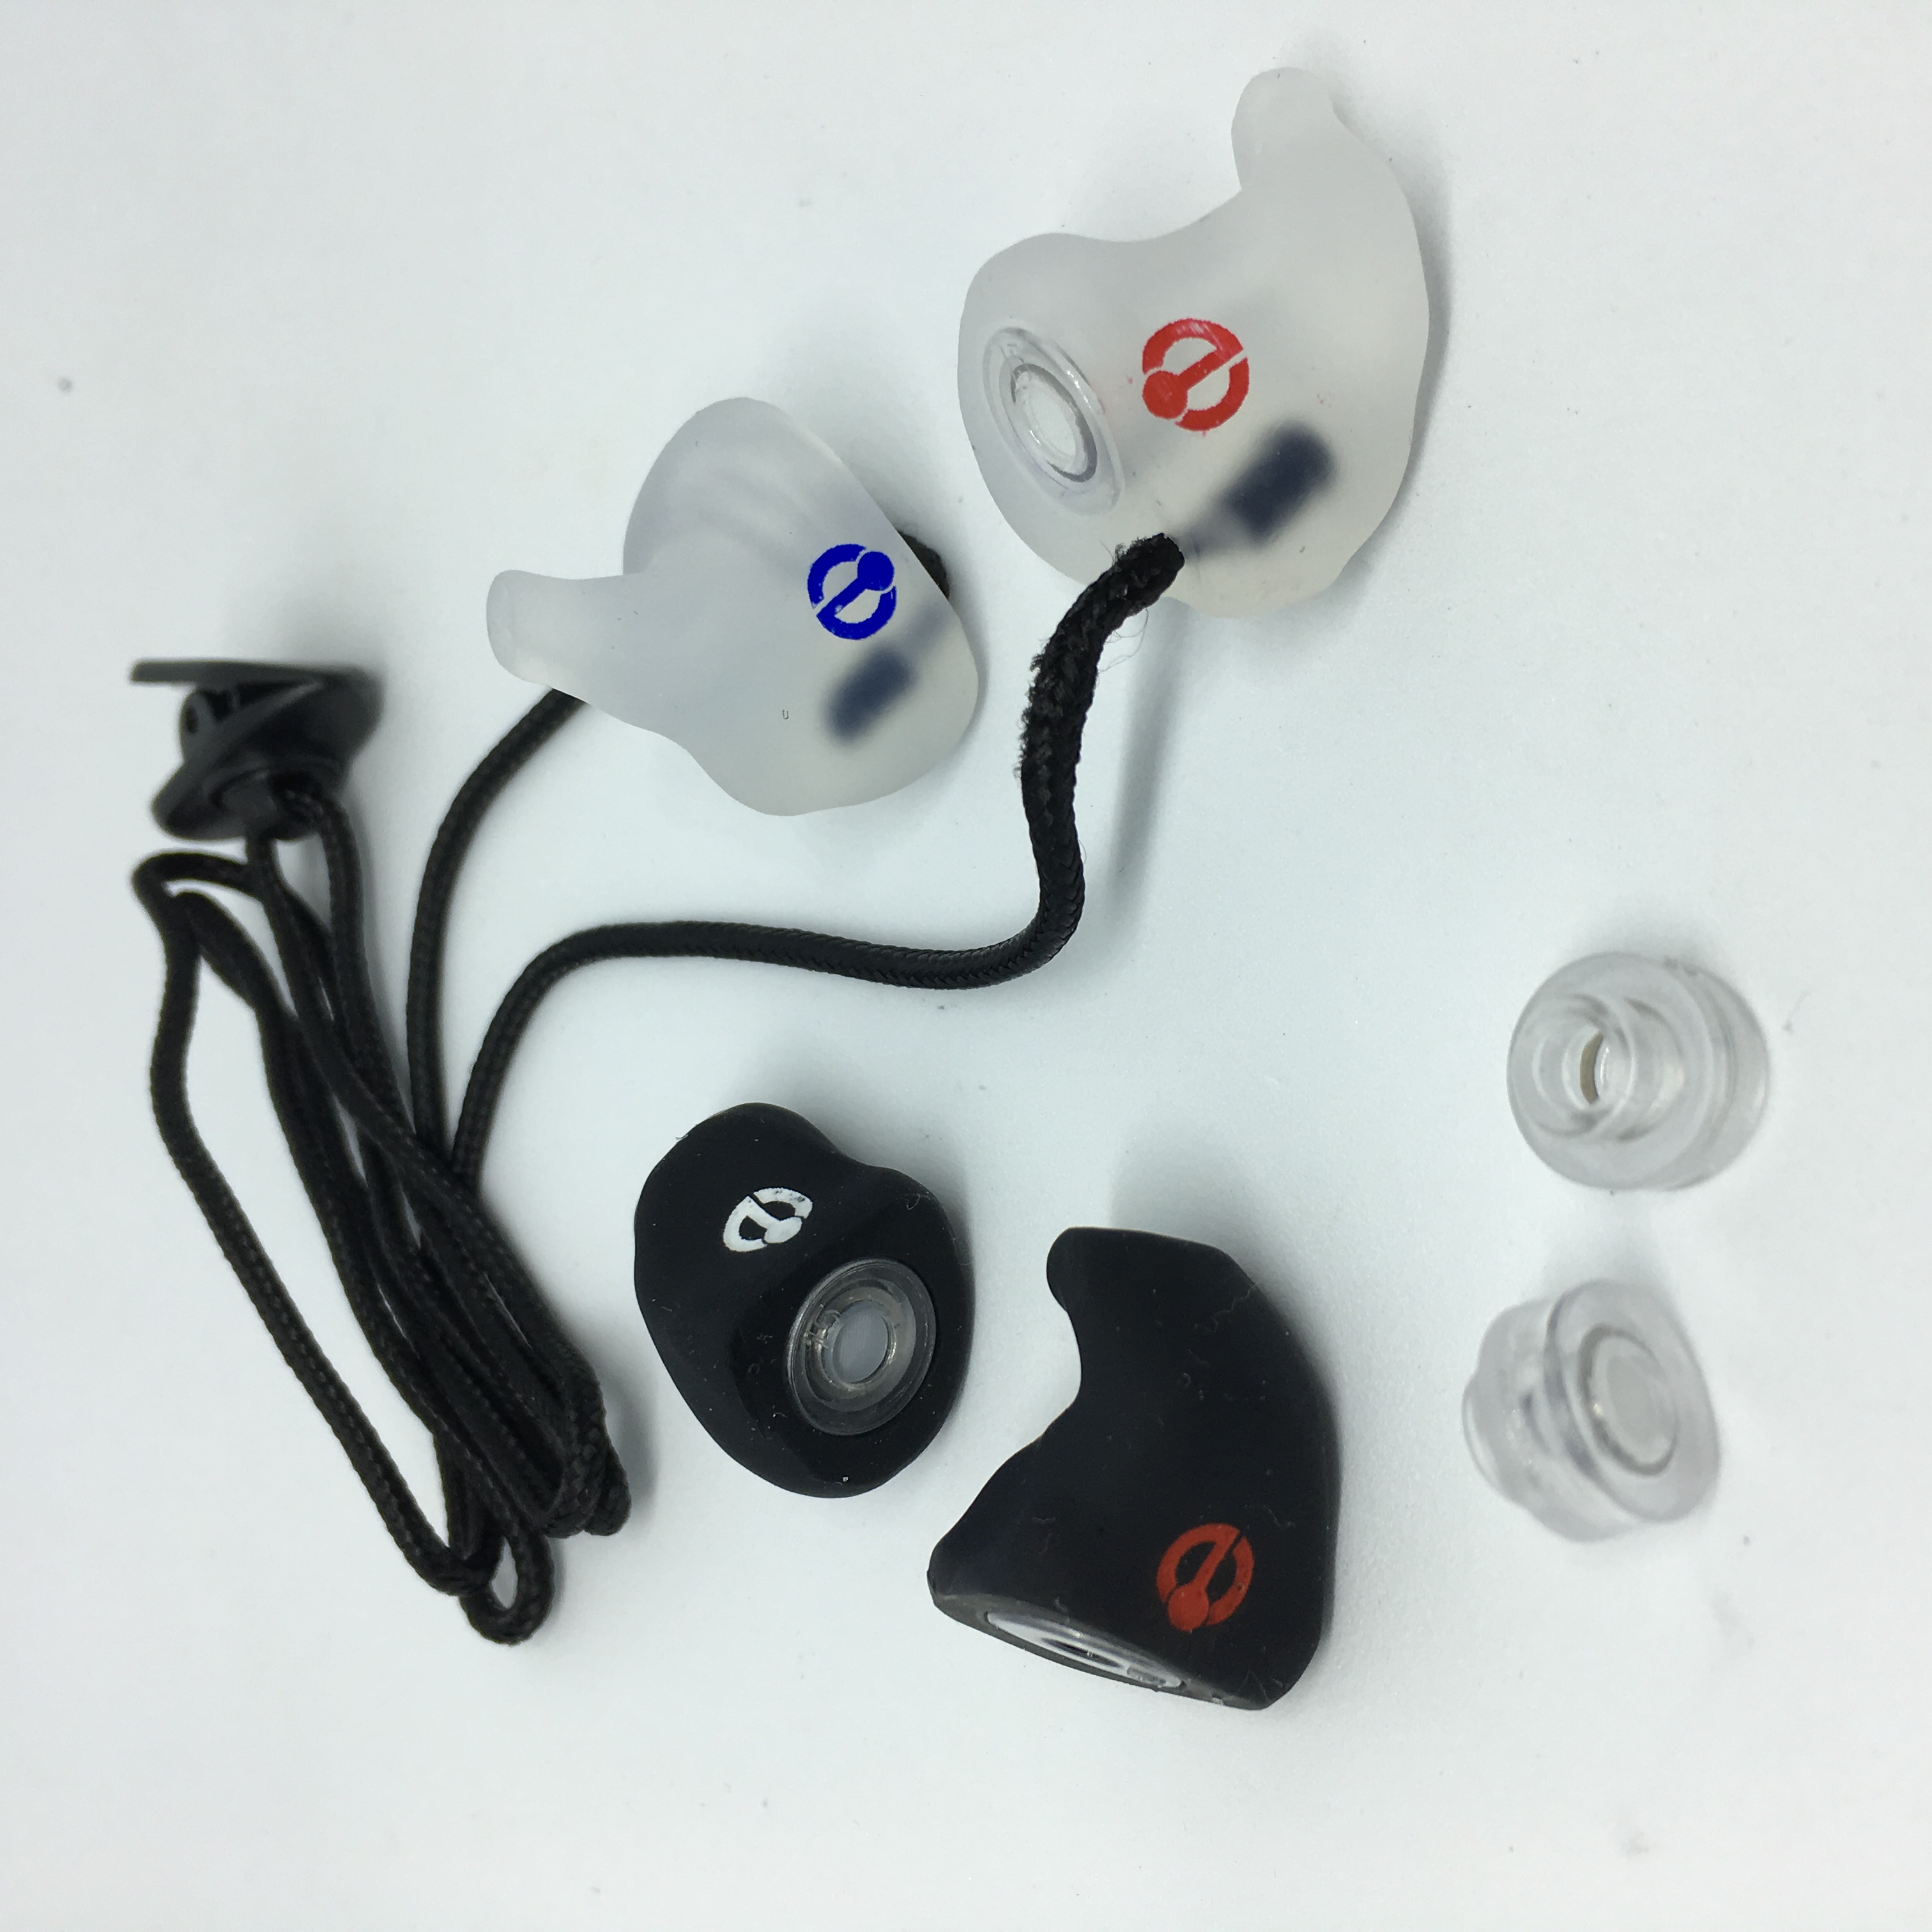 Protectores auditivos: Acerca de, usos y tipos